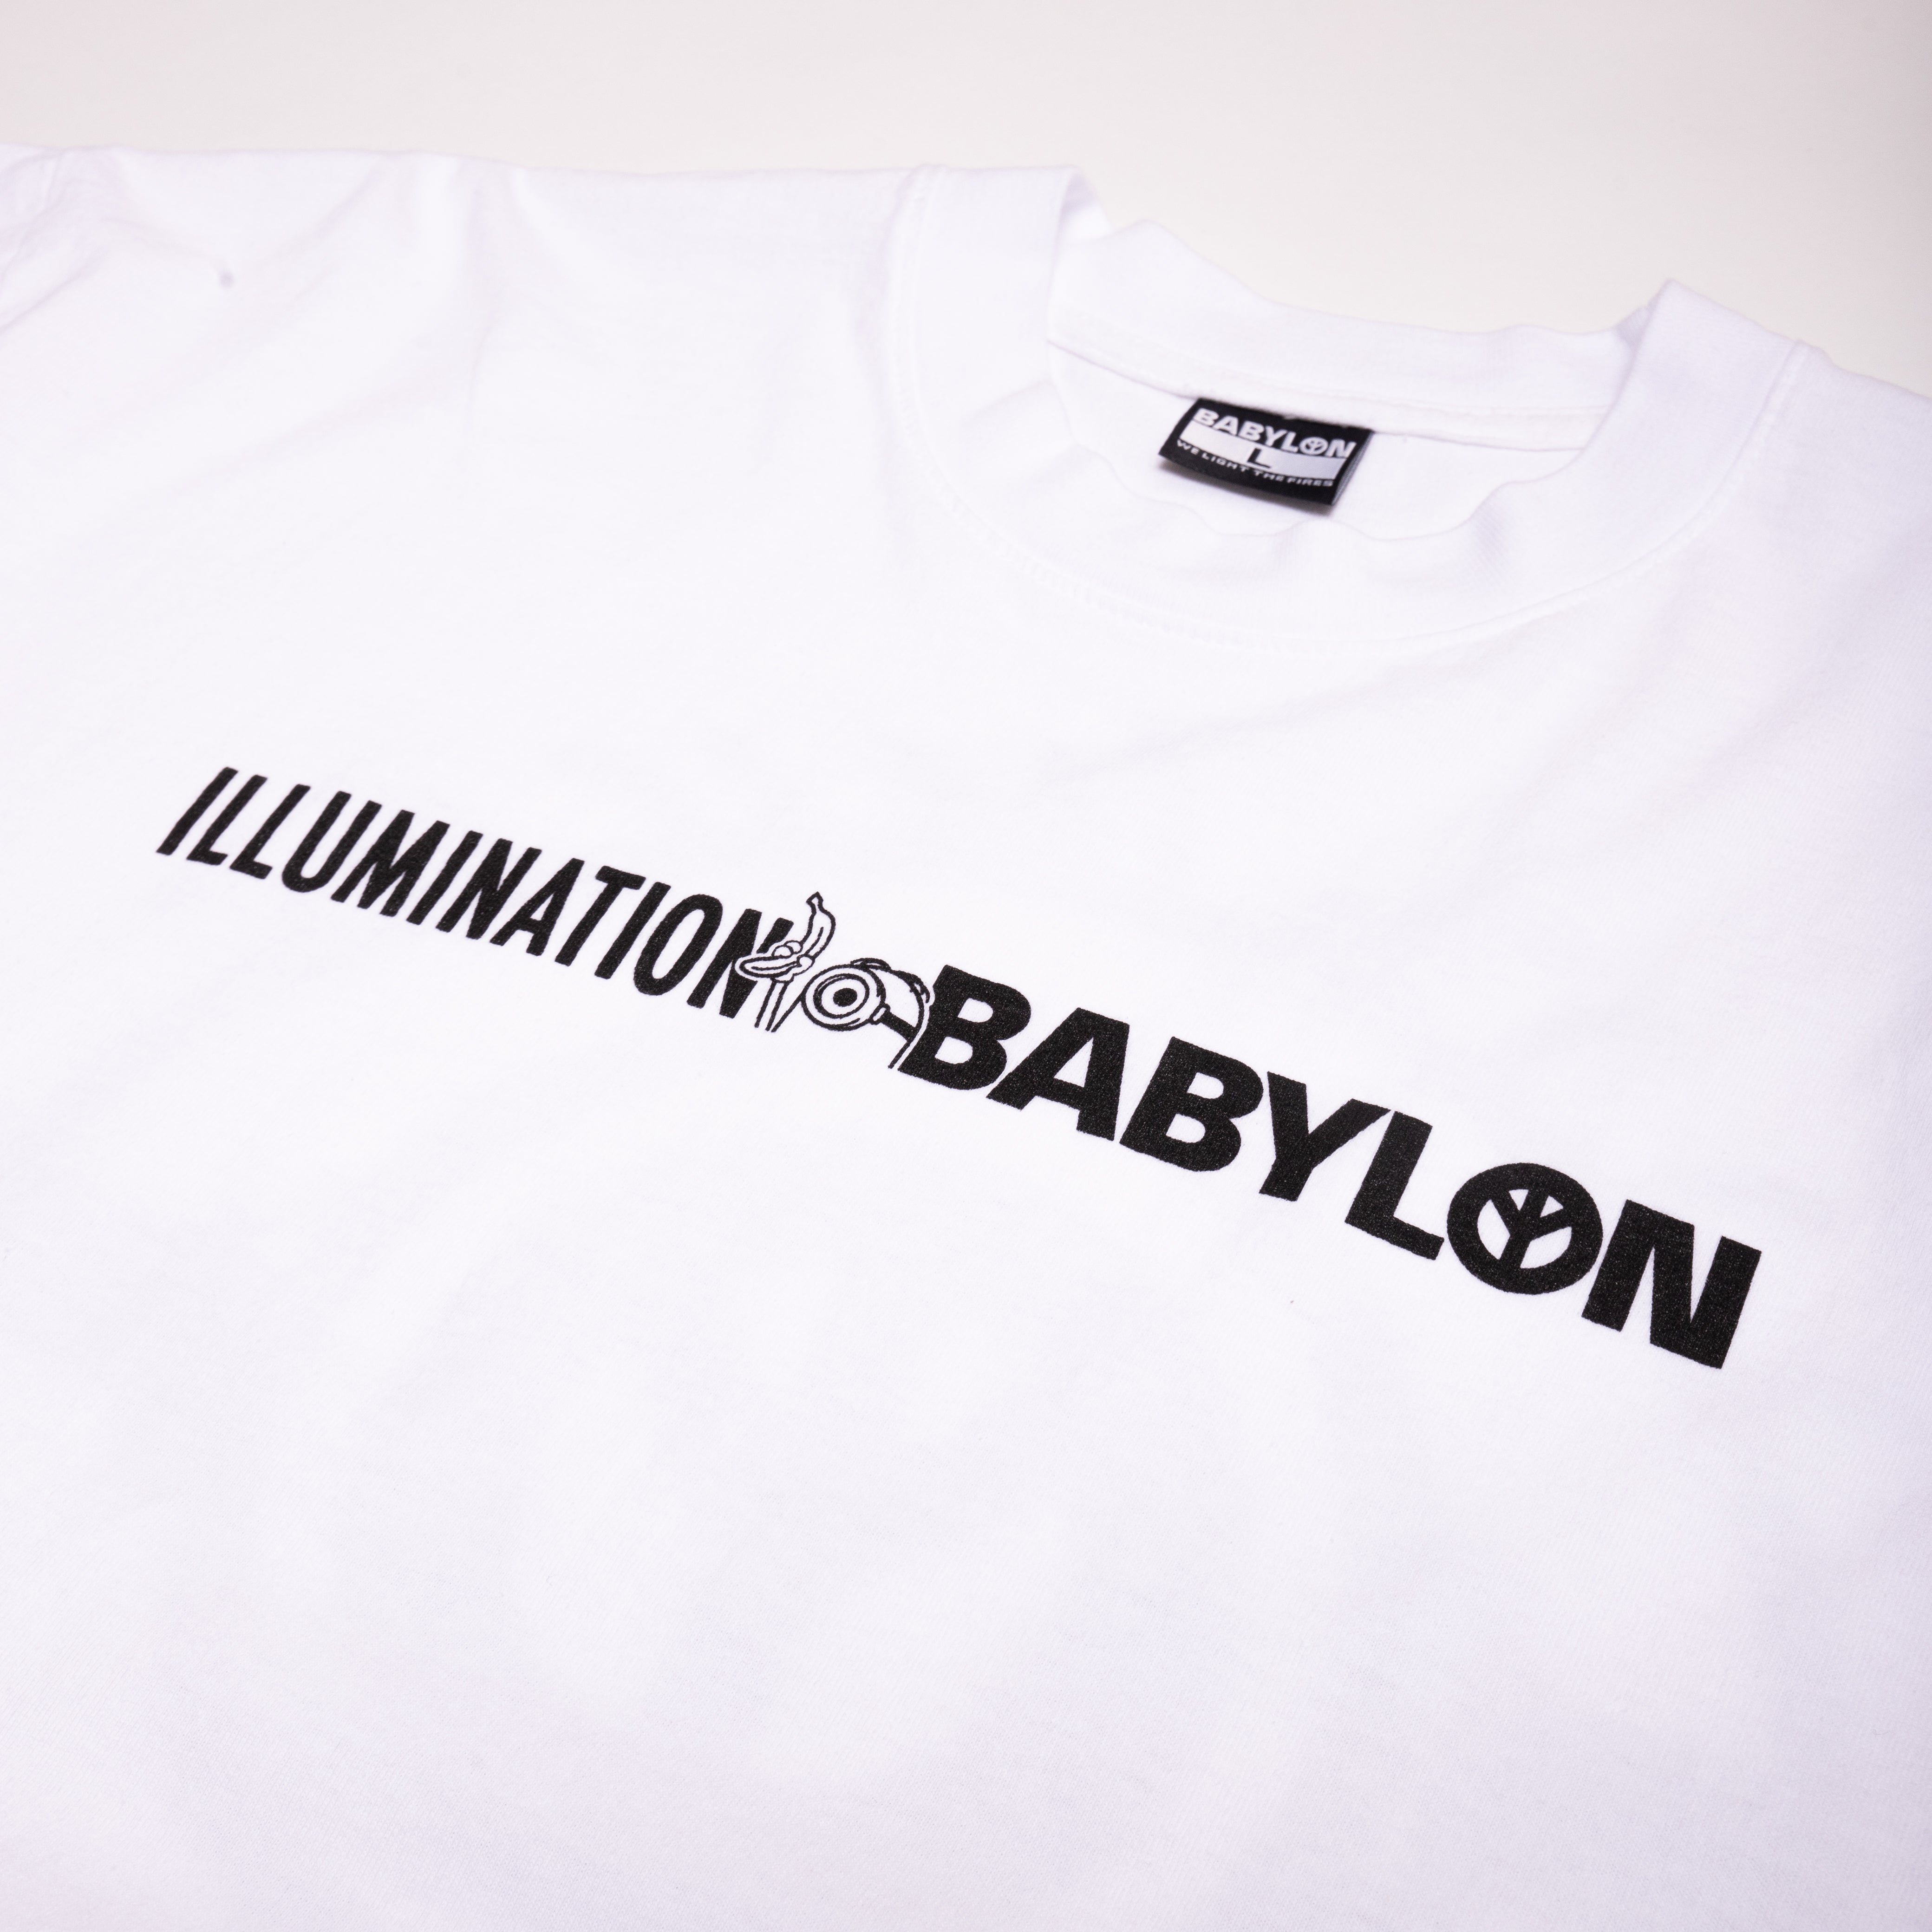 "ILLUMINATION BABYLON LOGO" T-SHIRT